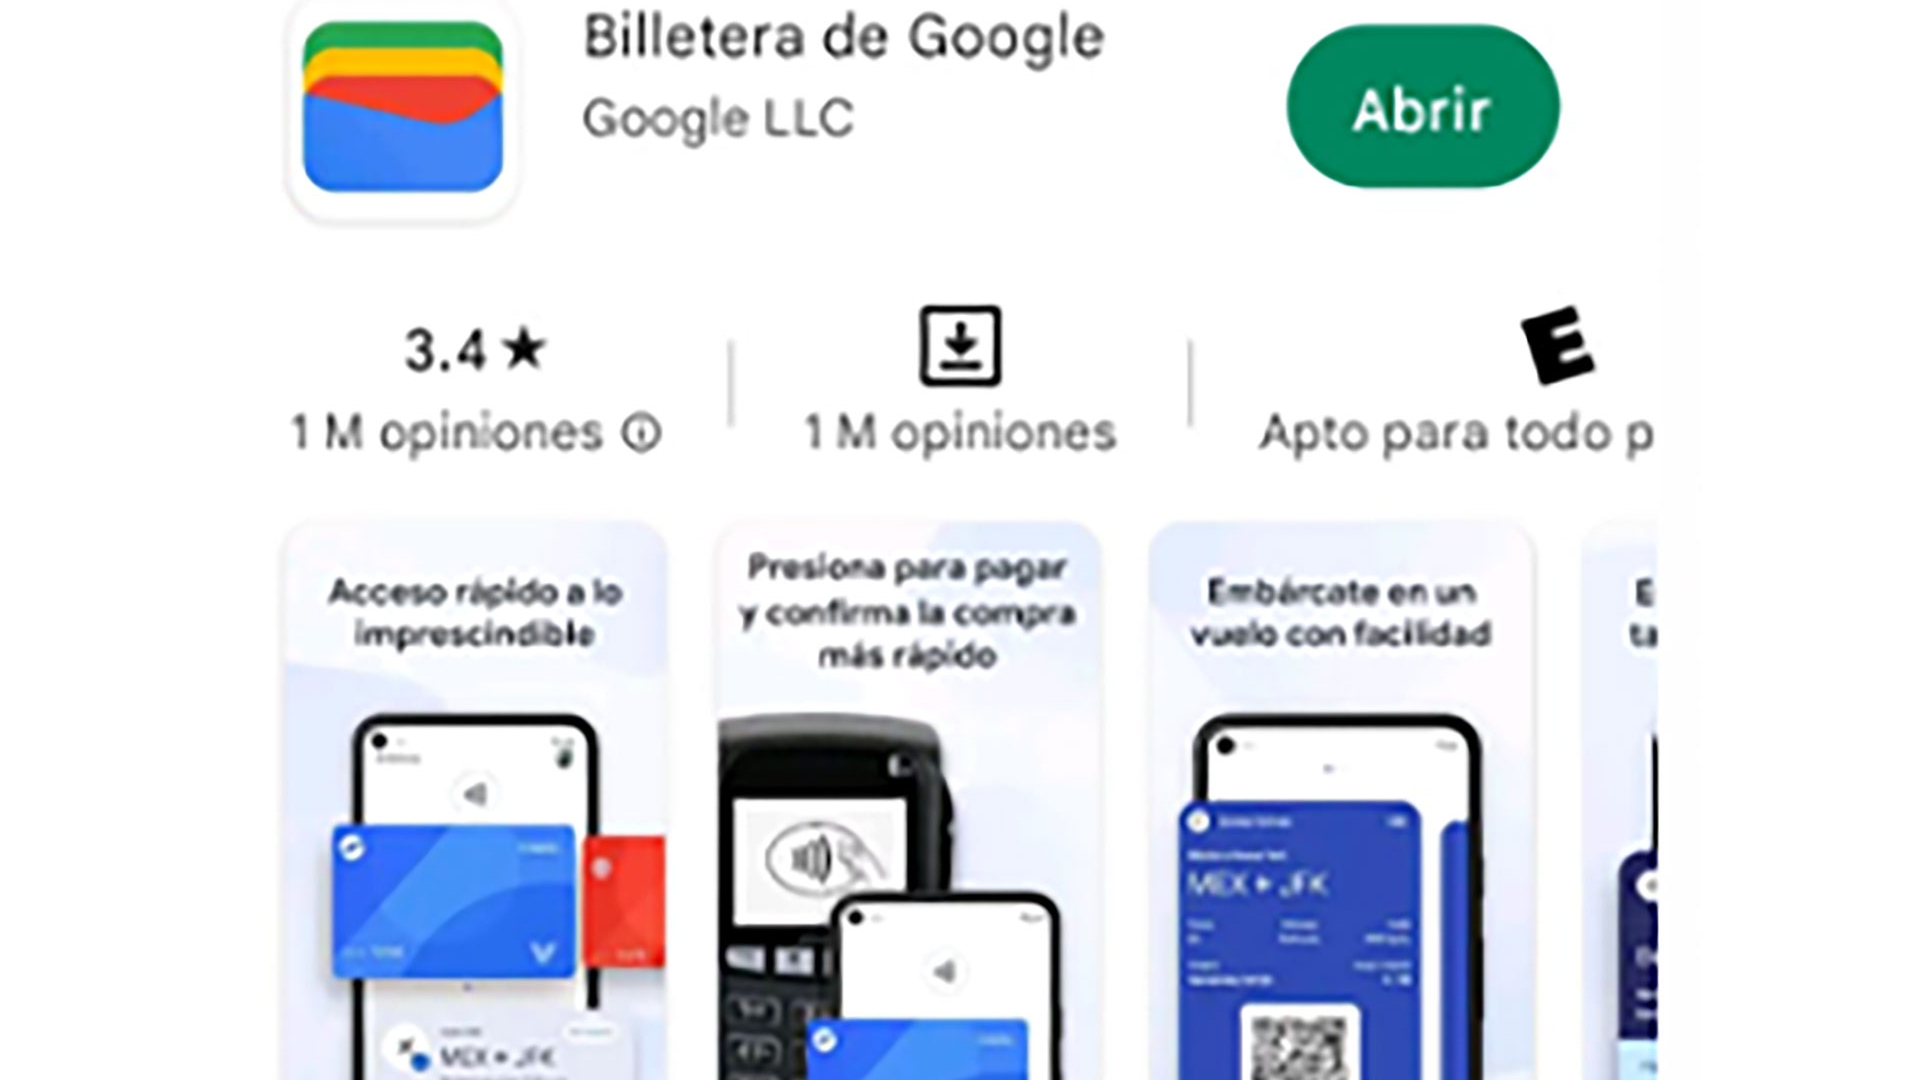 La billetera de Google ya puede descargarse para ser utilizada en la Argentina 